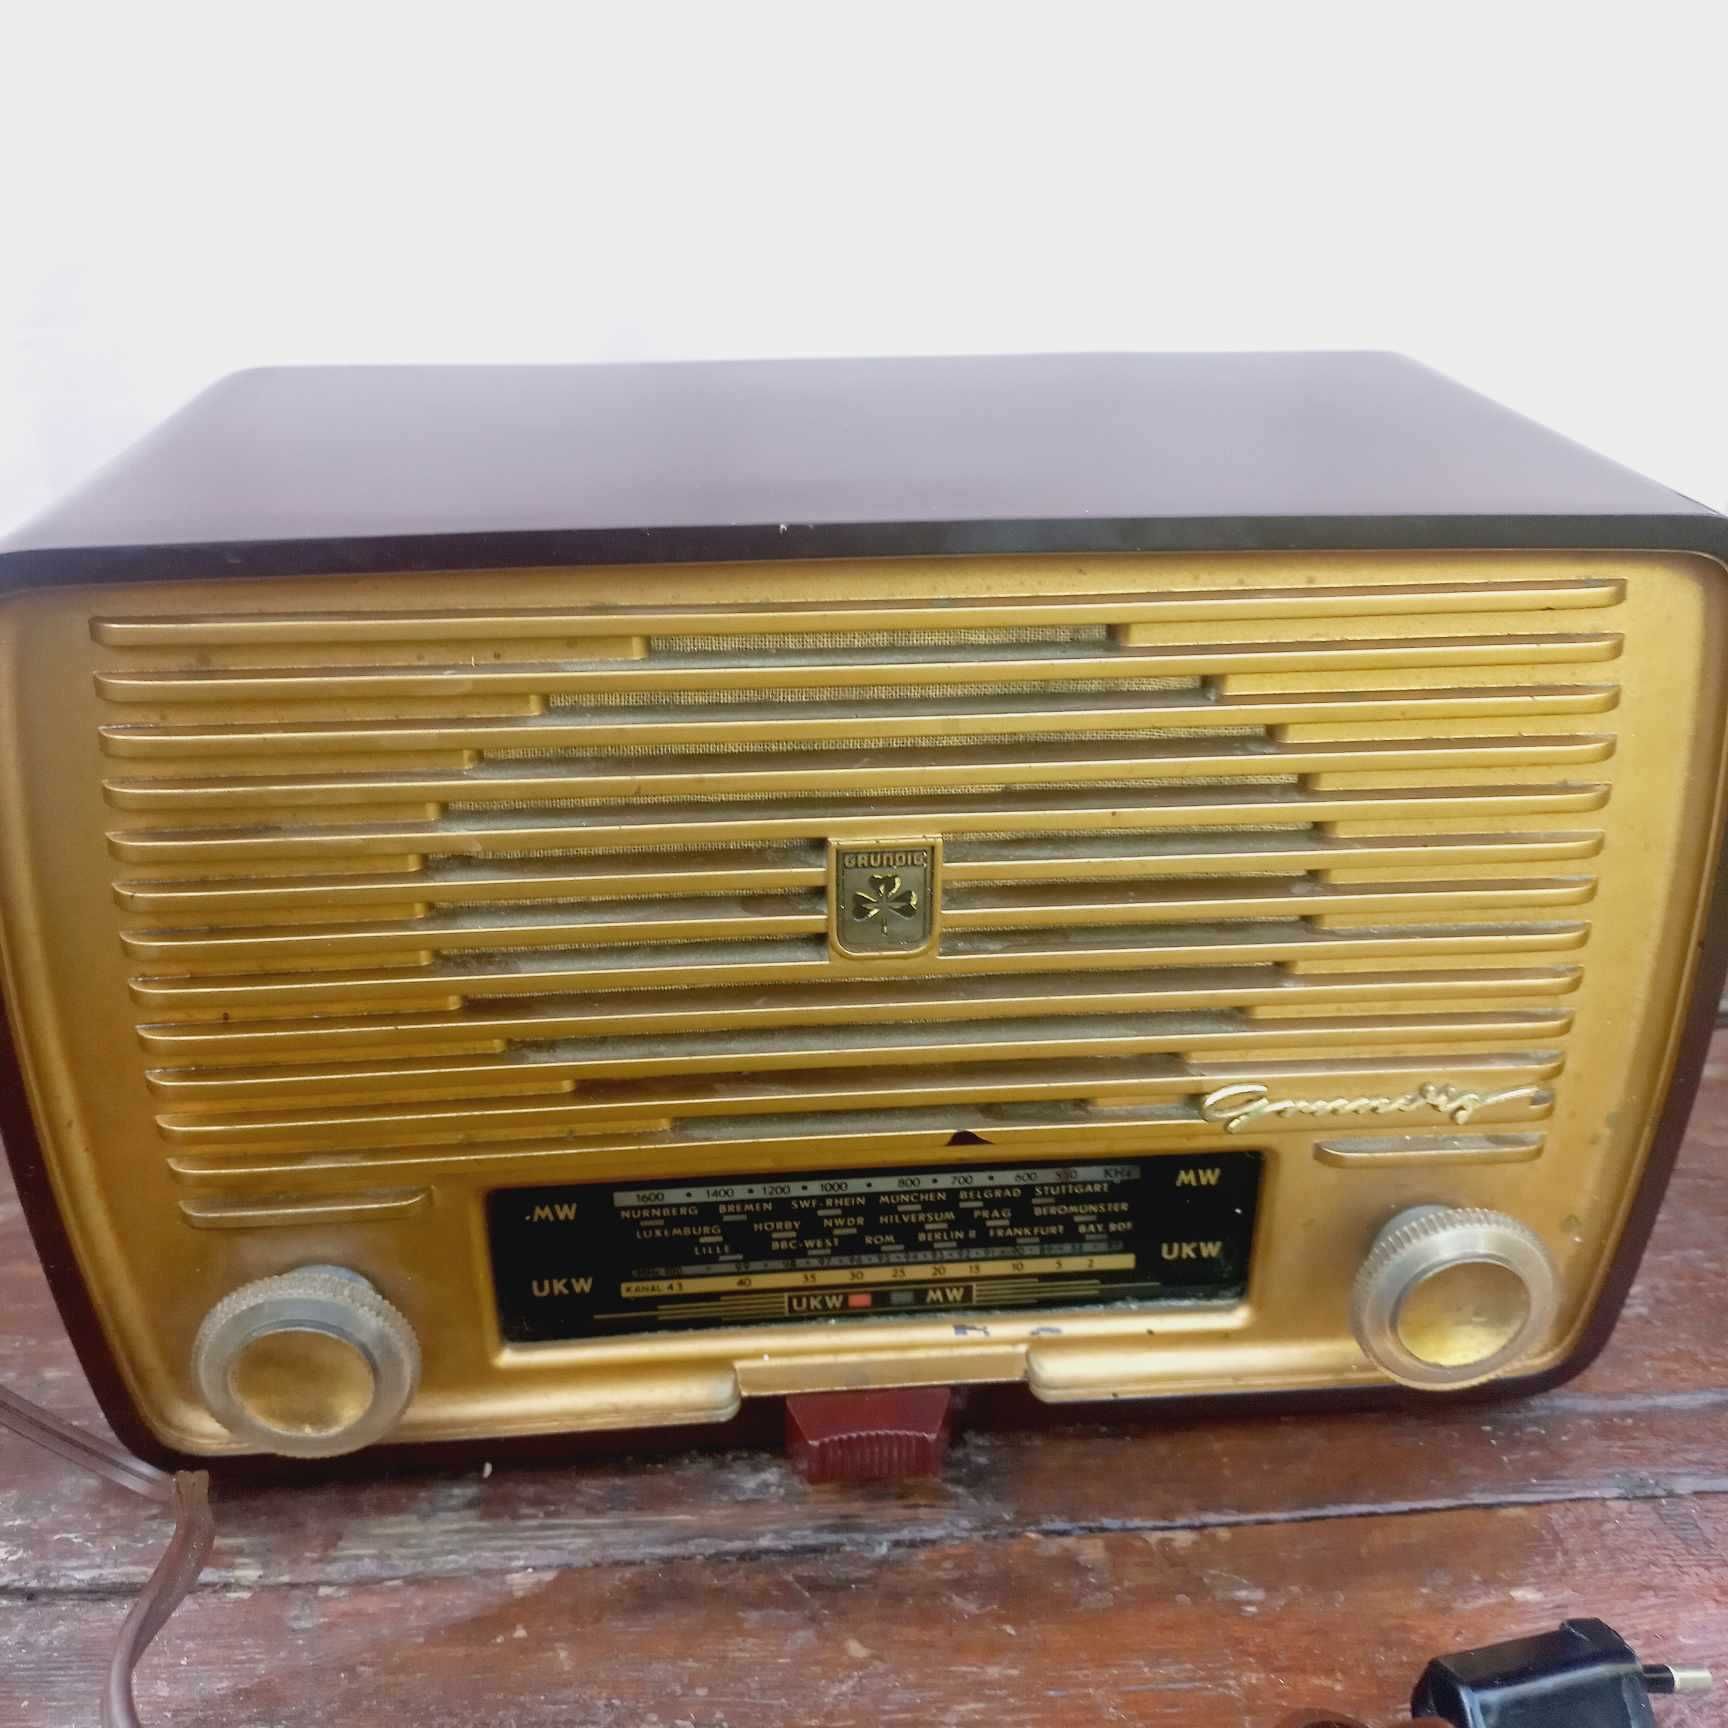 Радио Grundig /Грундинг 1954 г